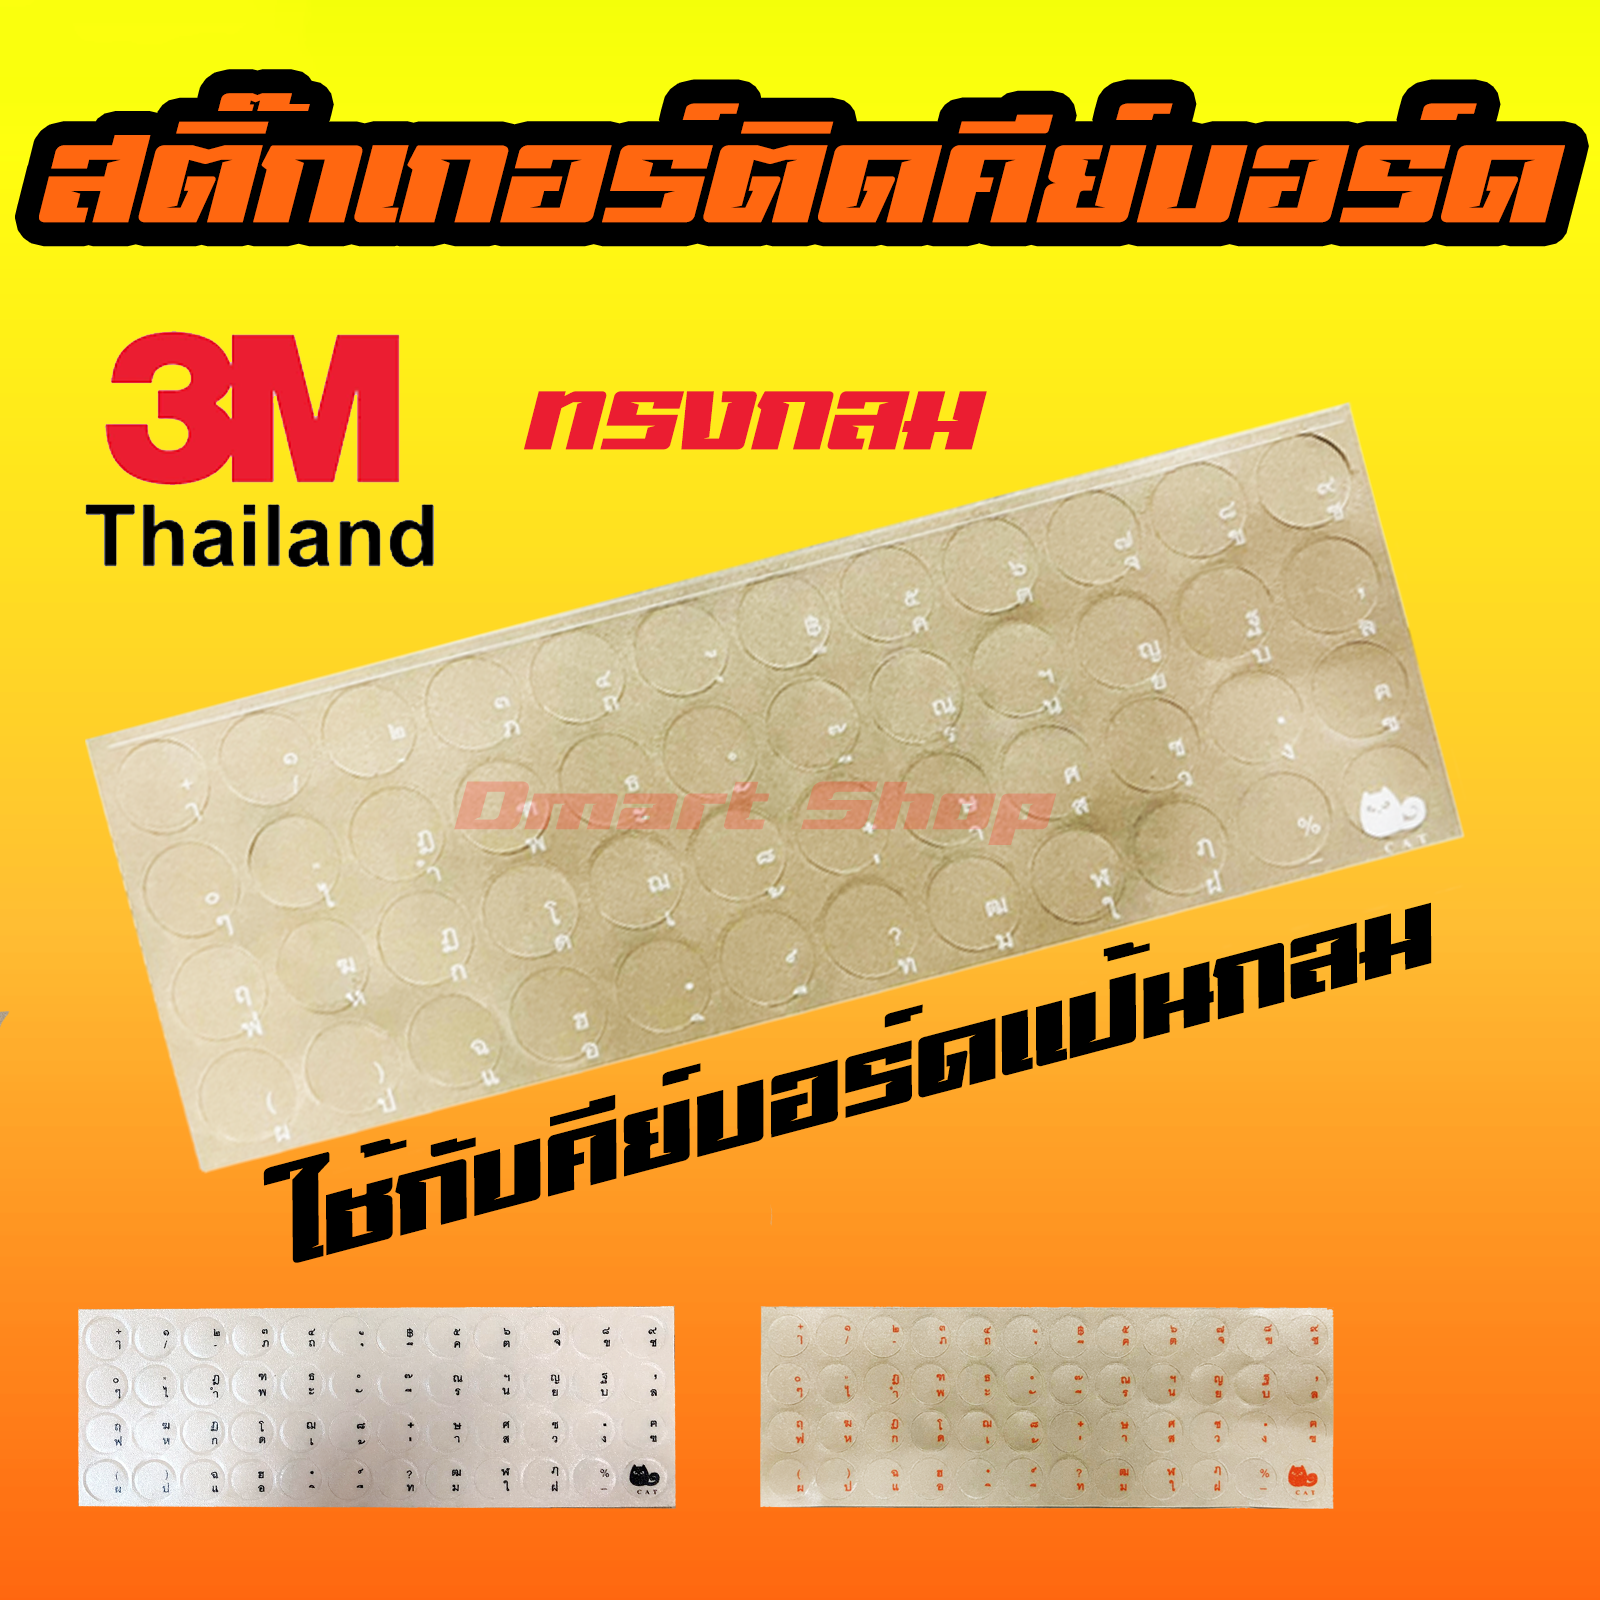 สติ๊กเกอร์ ภาษาไทย ติด คีย์บอร์ด ทรงกลม พื้นหลังใส สกรีน 3 สี สีดำ สีขาว สีส้ม 3M Sticker Keyboard เหมาะกับ ปุ่ม วงกลม